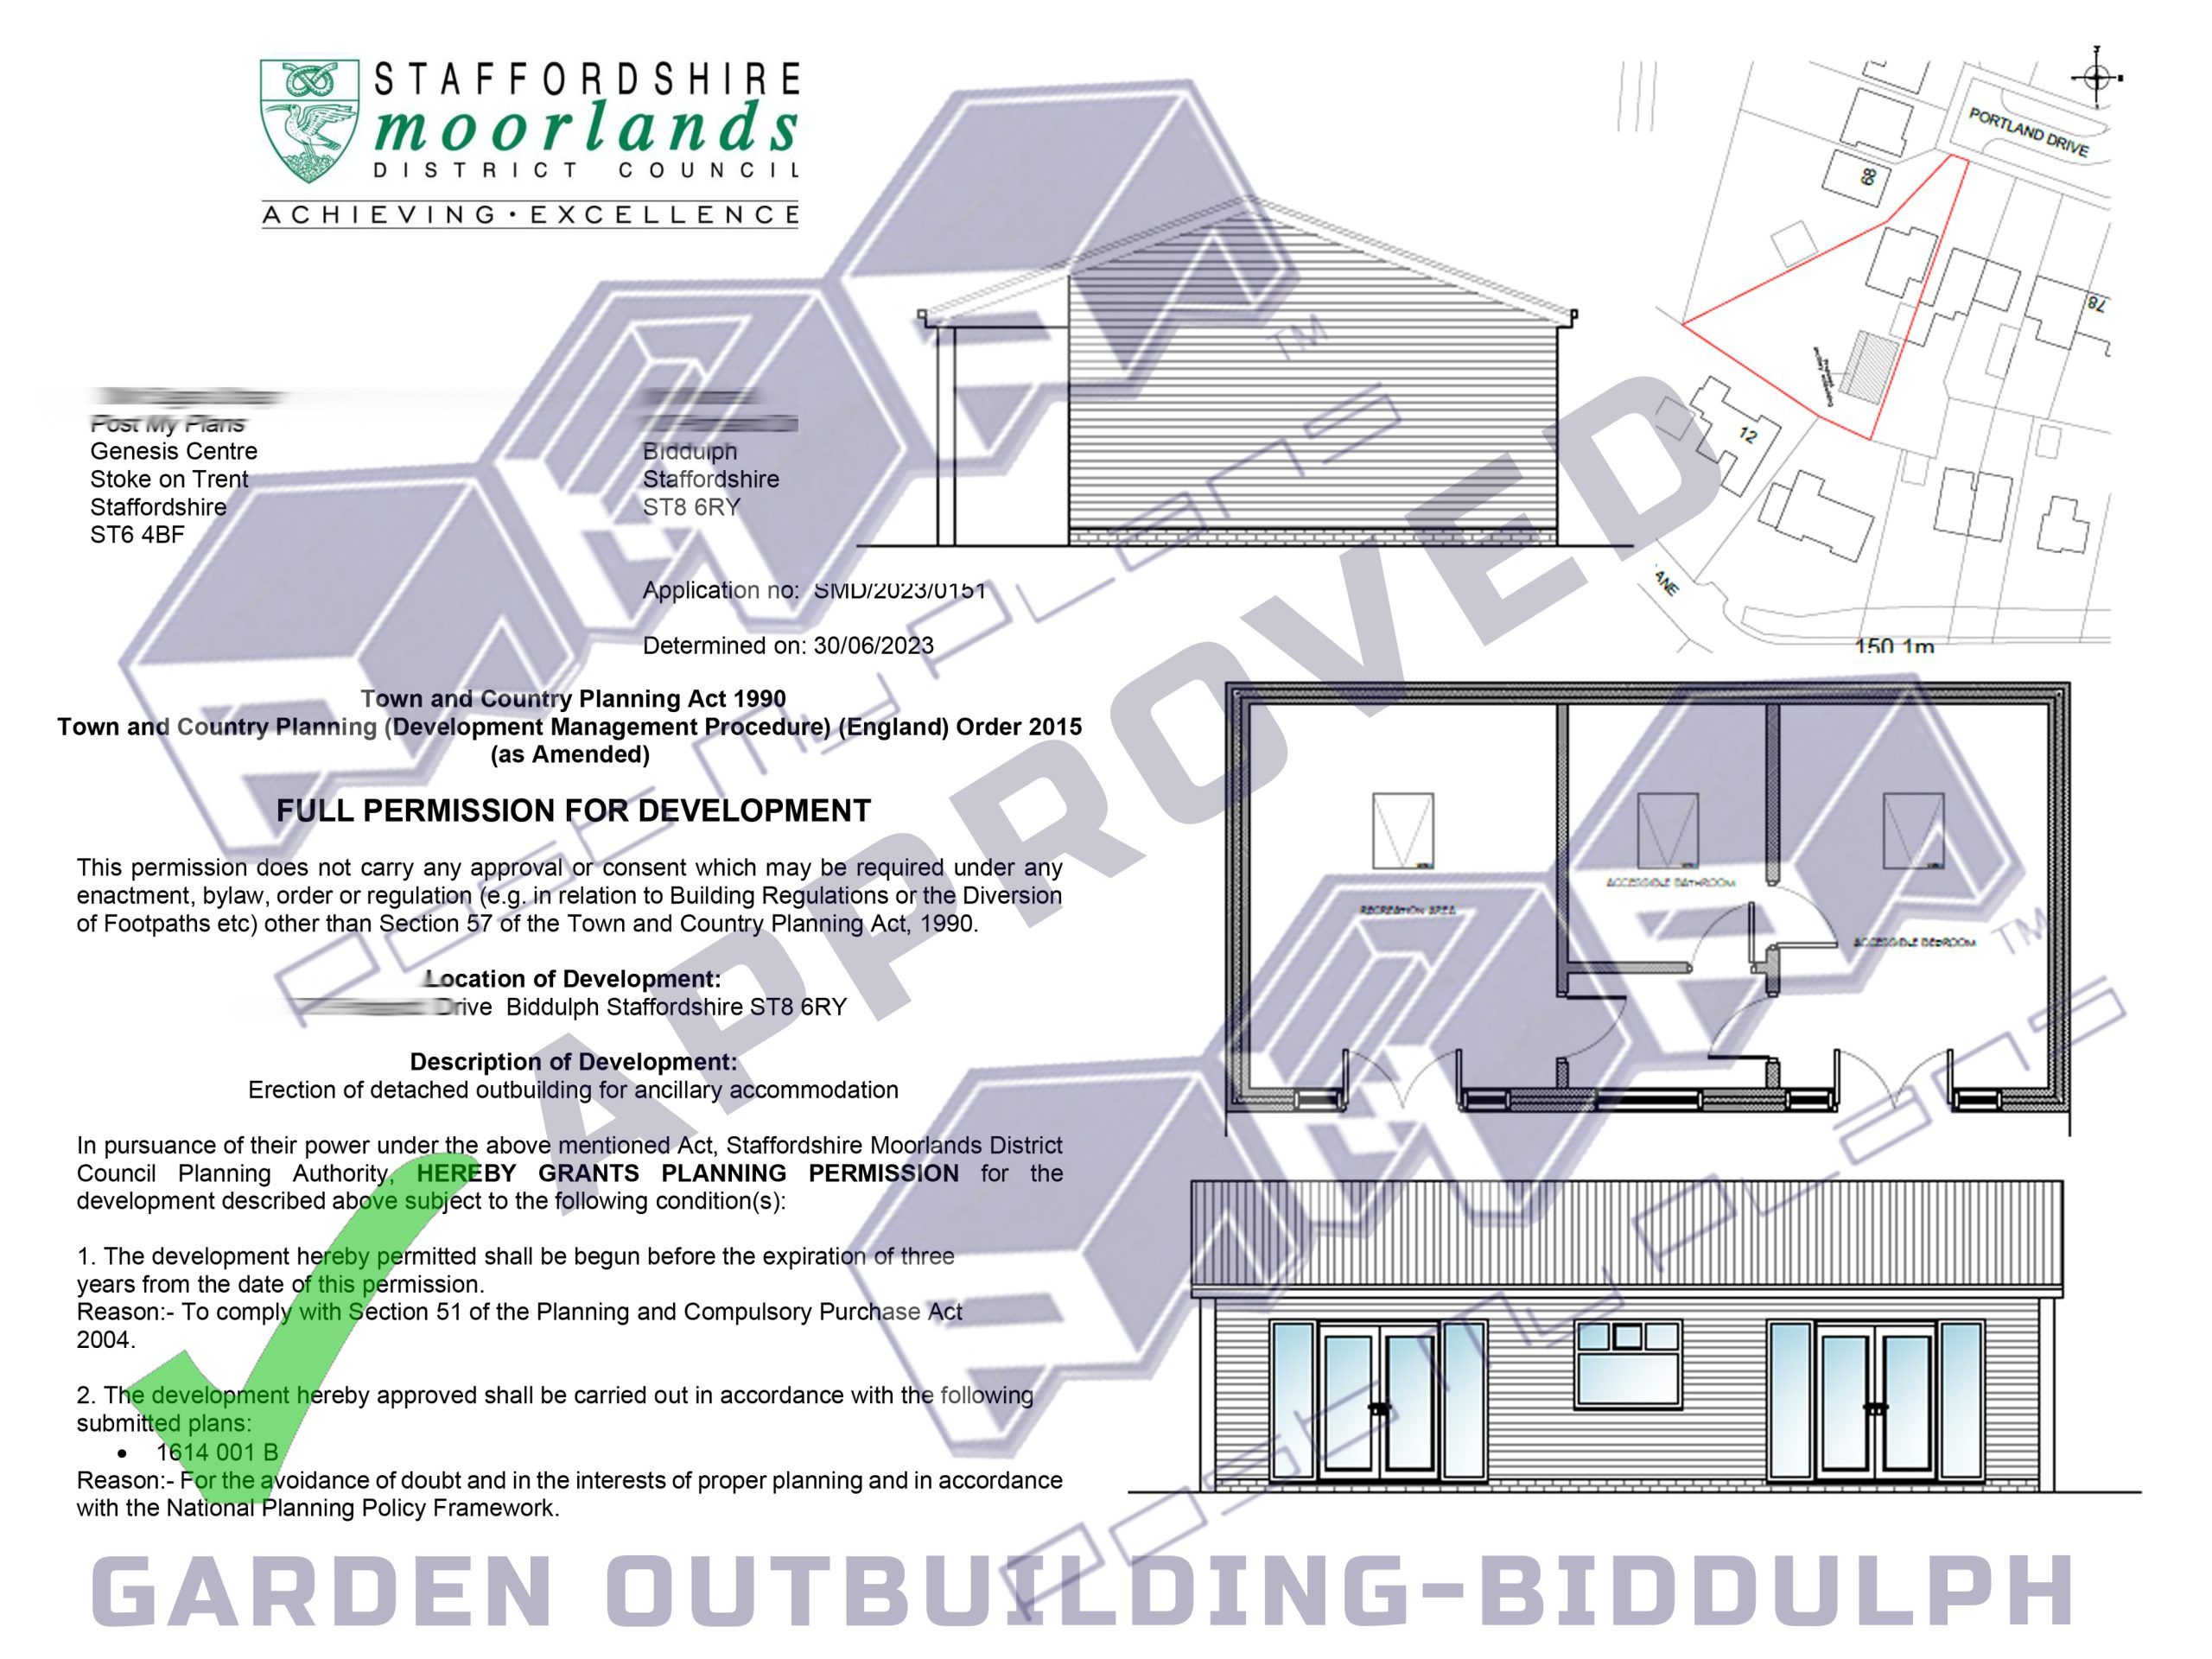 garden outbuilding biddulph scaled e6474d70